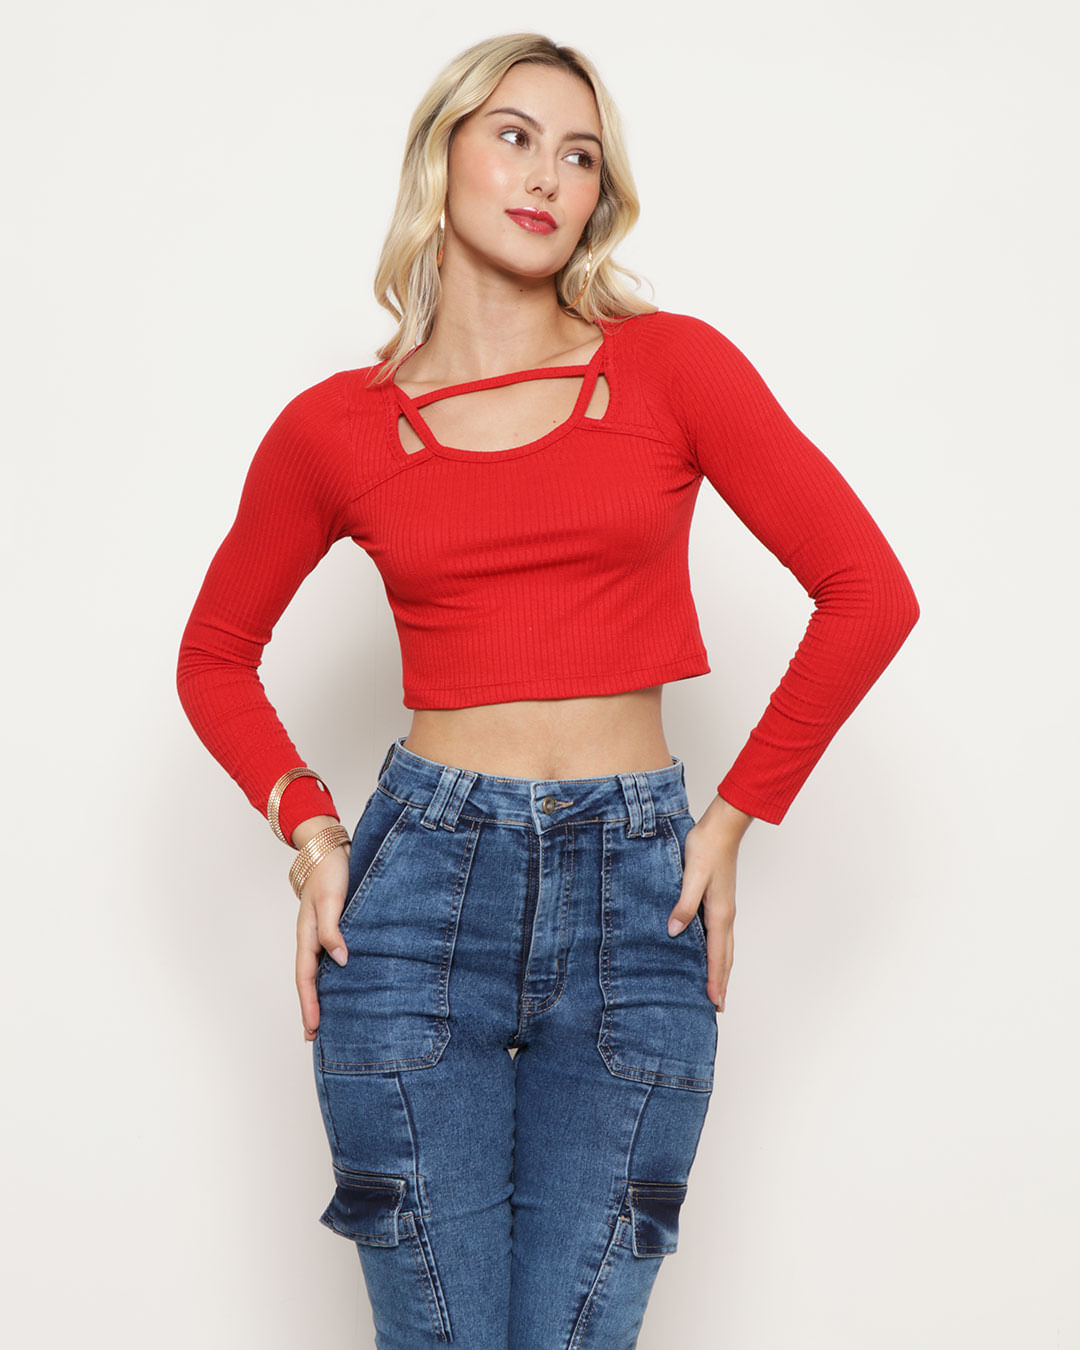 Blusa Cropped Feminina Decote Vazado Canelada Vermelha